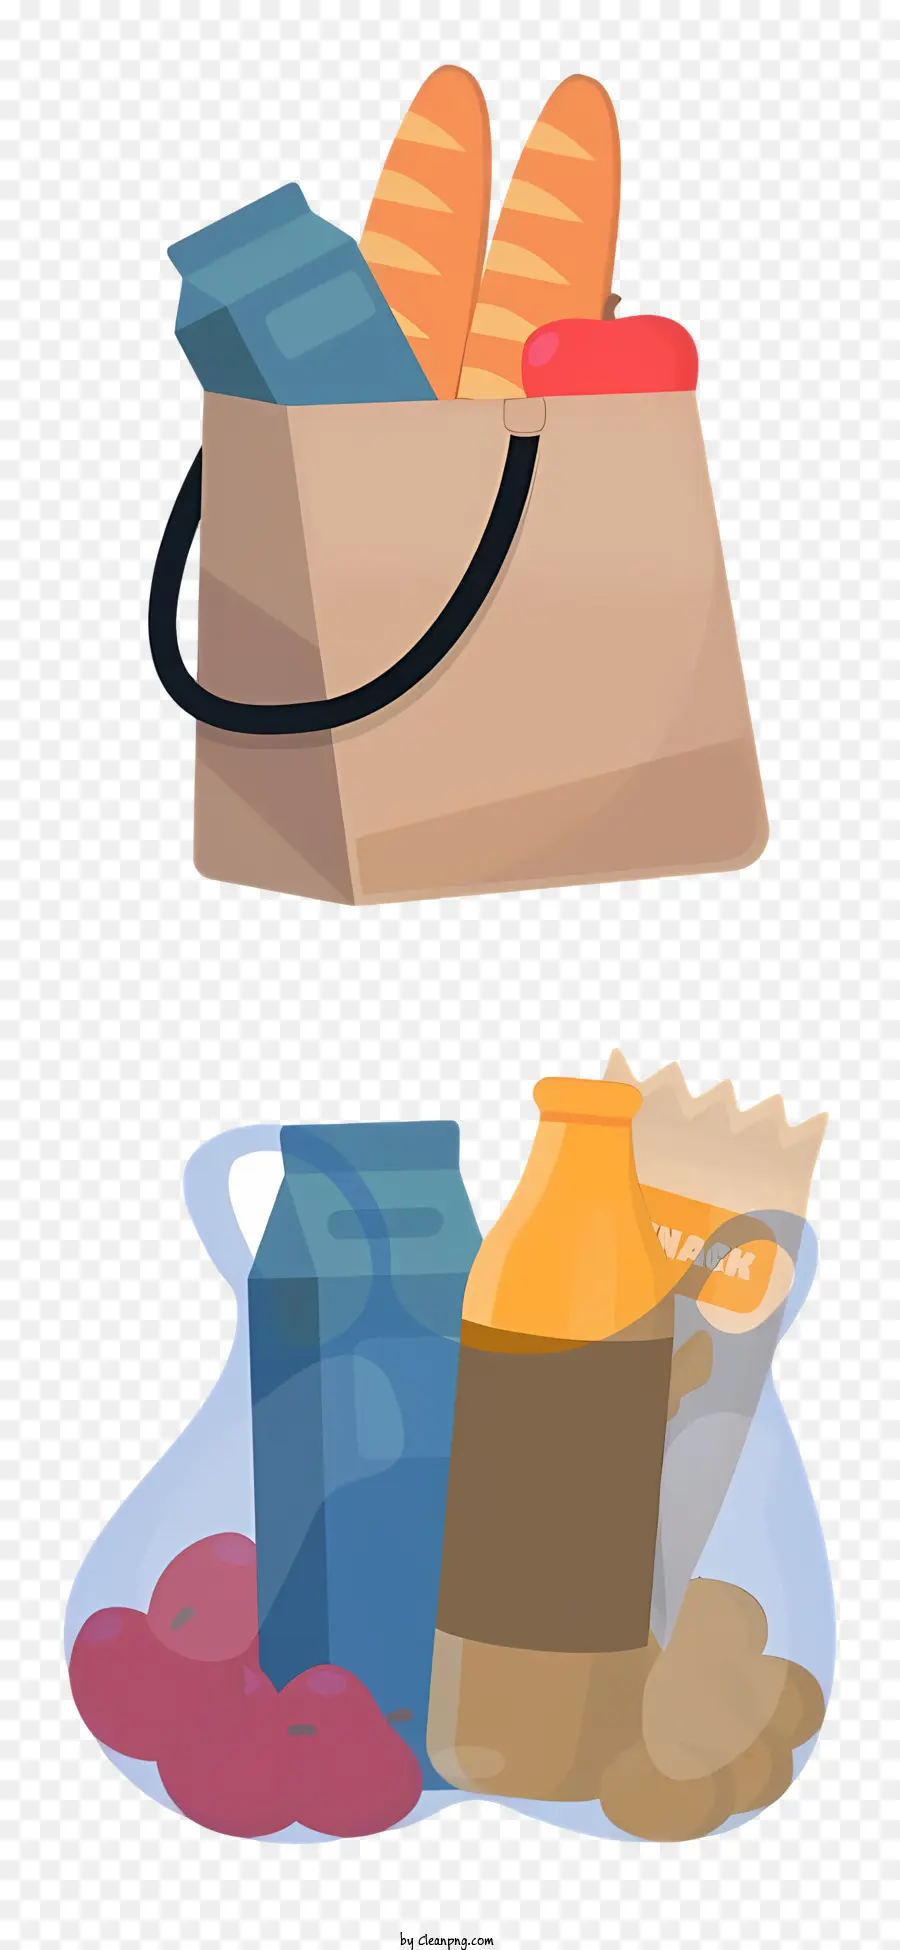 Einkaufstasche - Transparente Einkaufstasche mit Brot, Käse, Mayonnaise